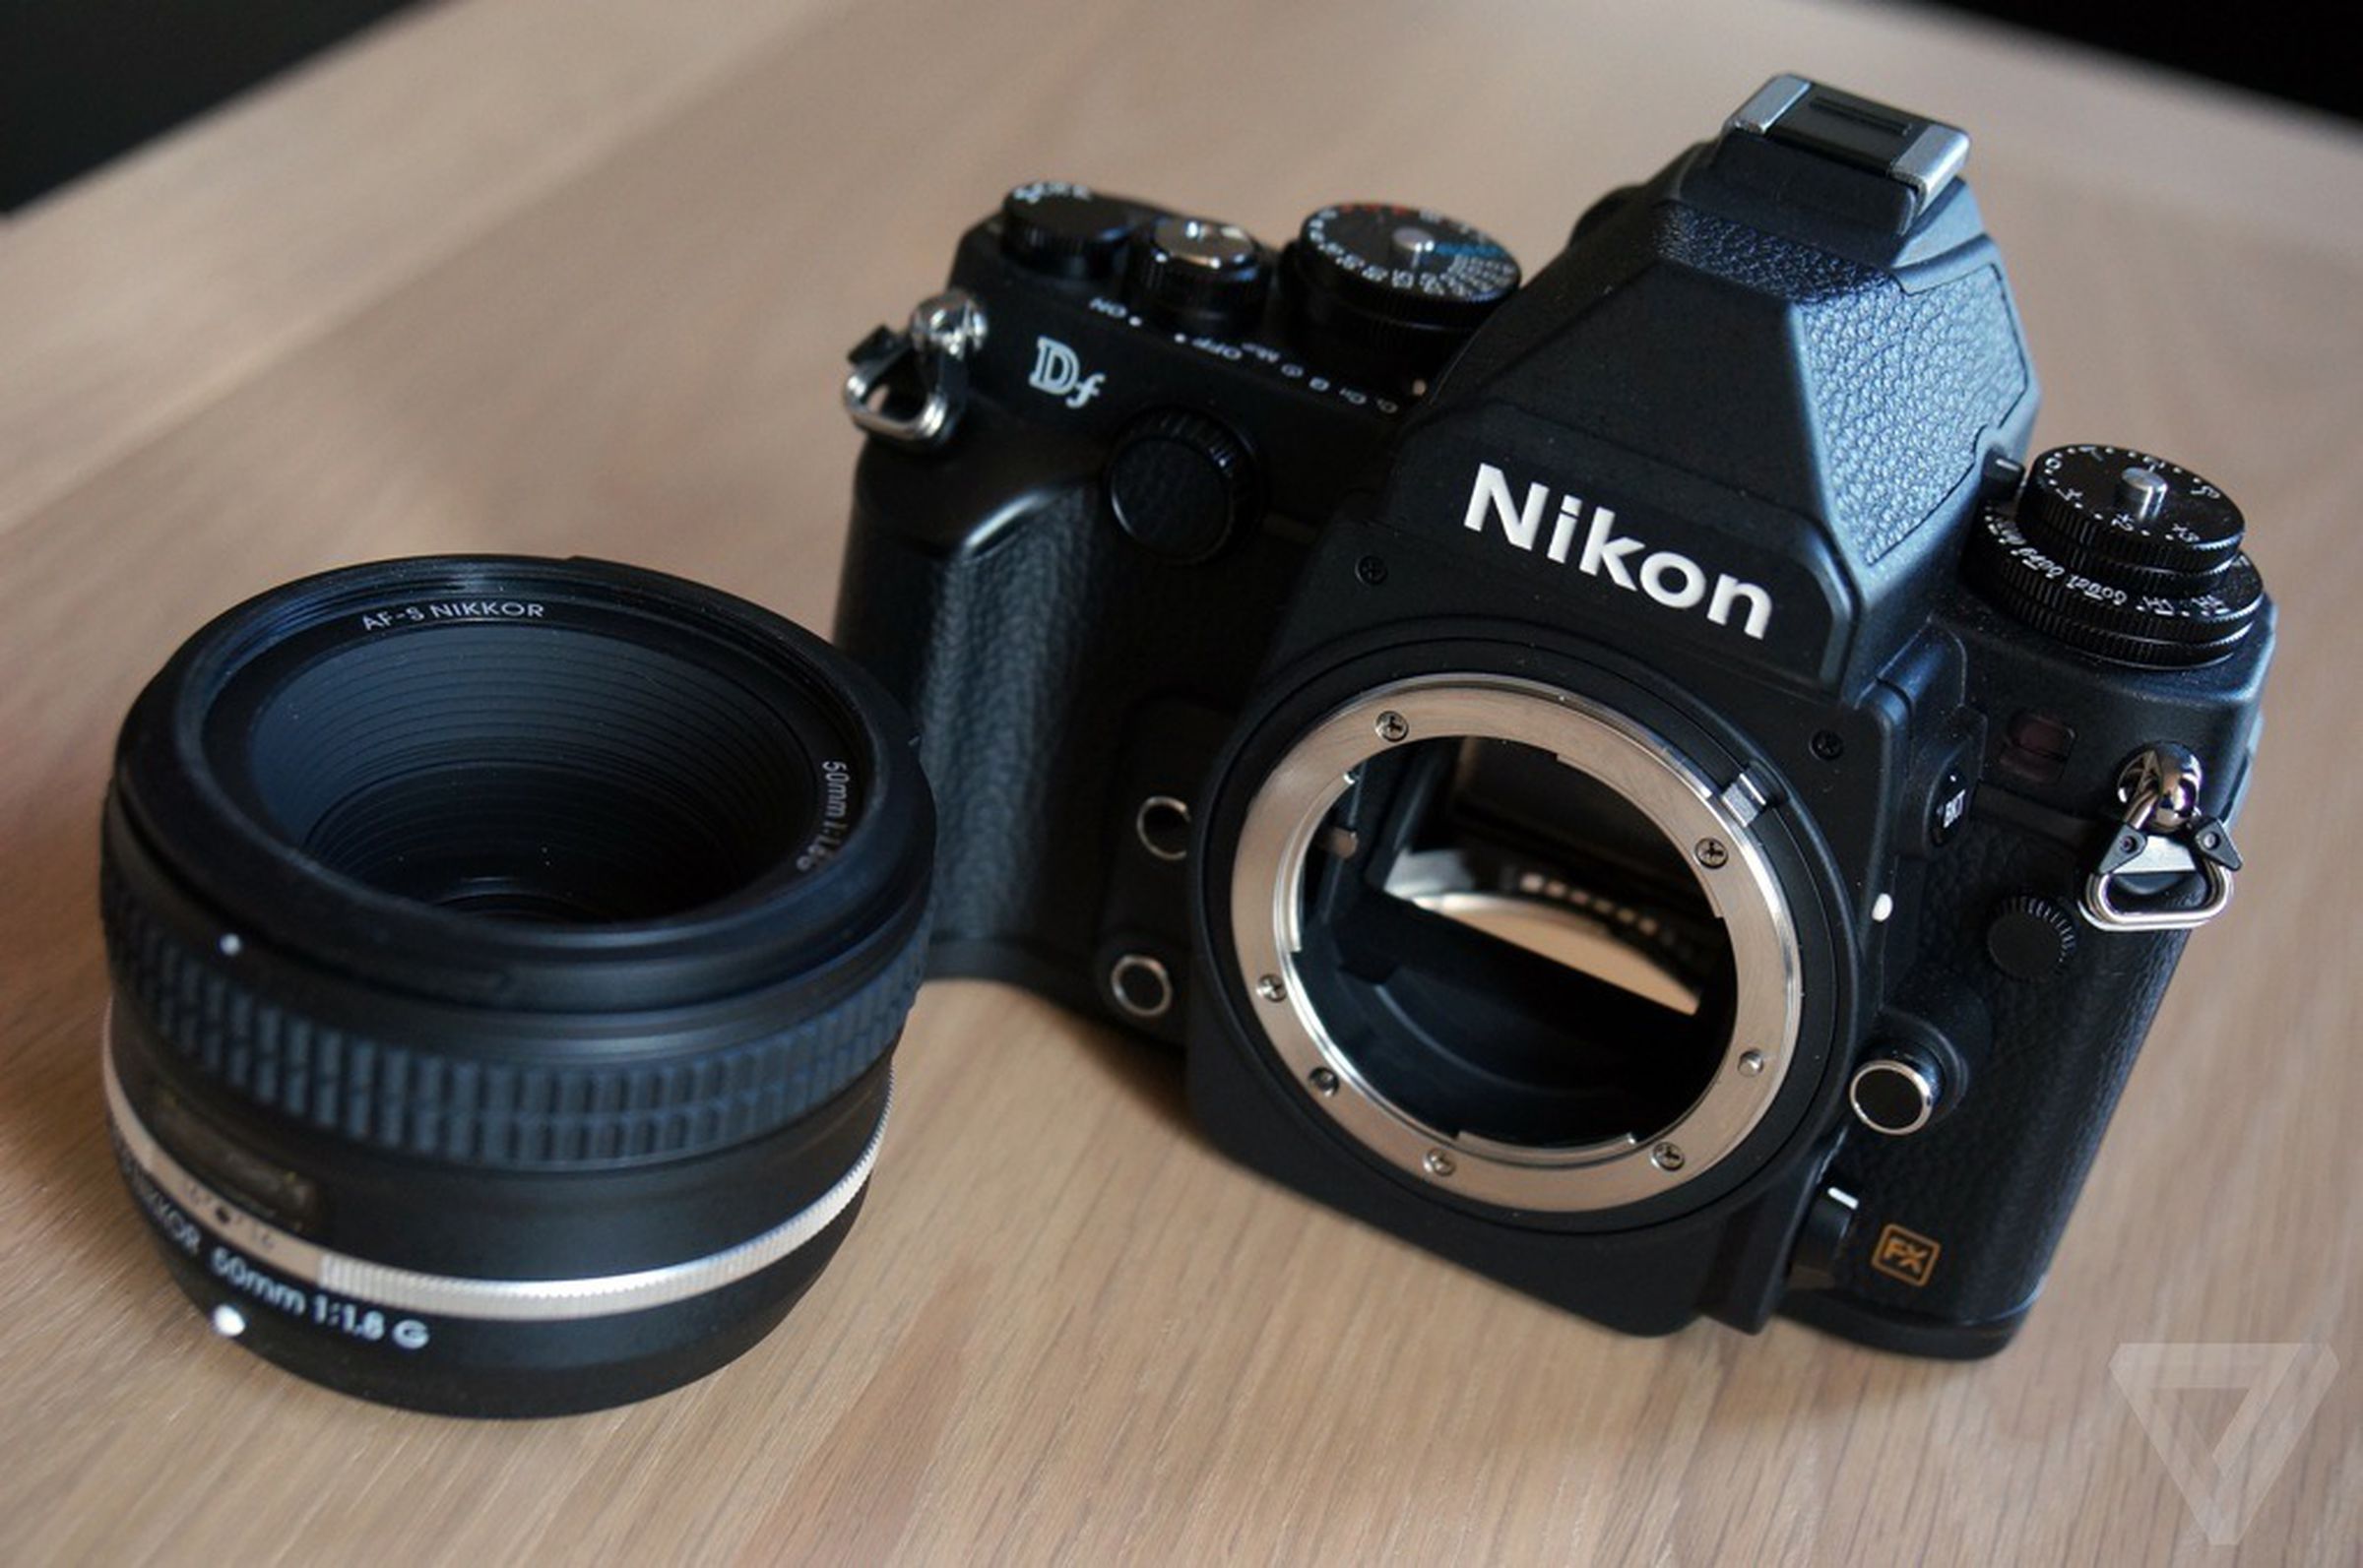 Nikon Df hands-on gallery